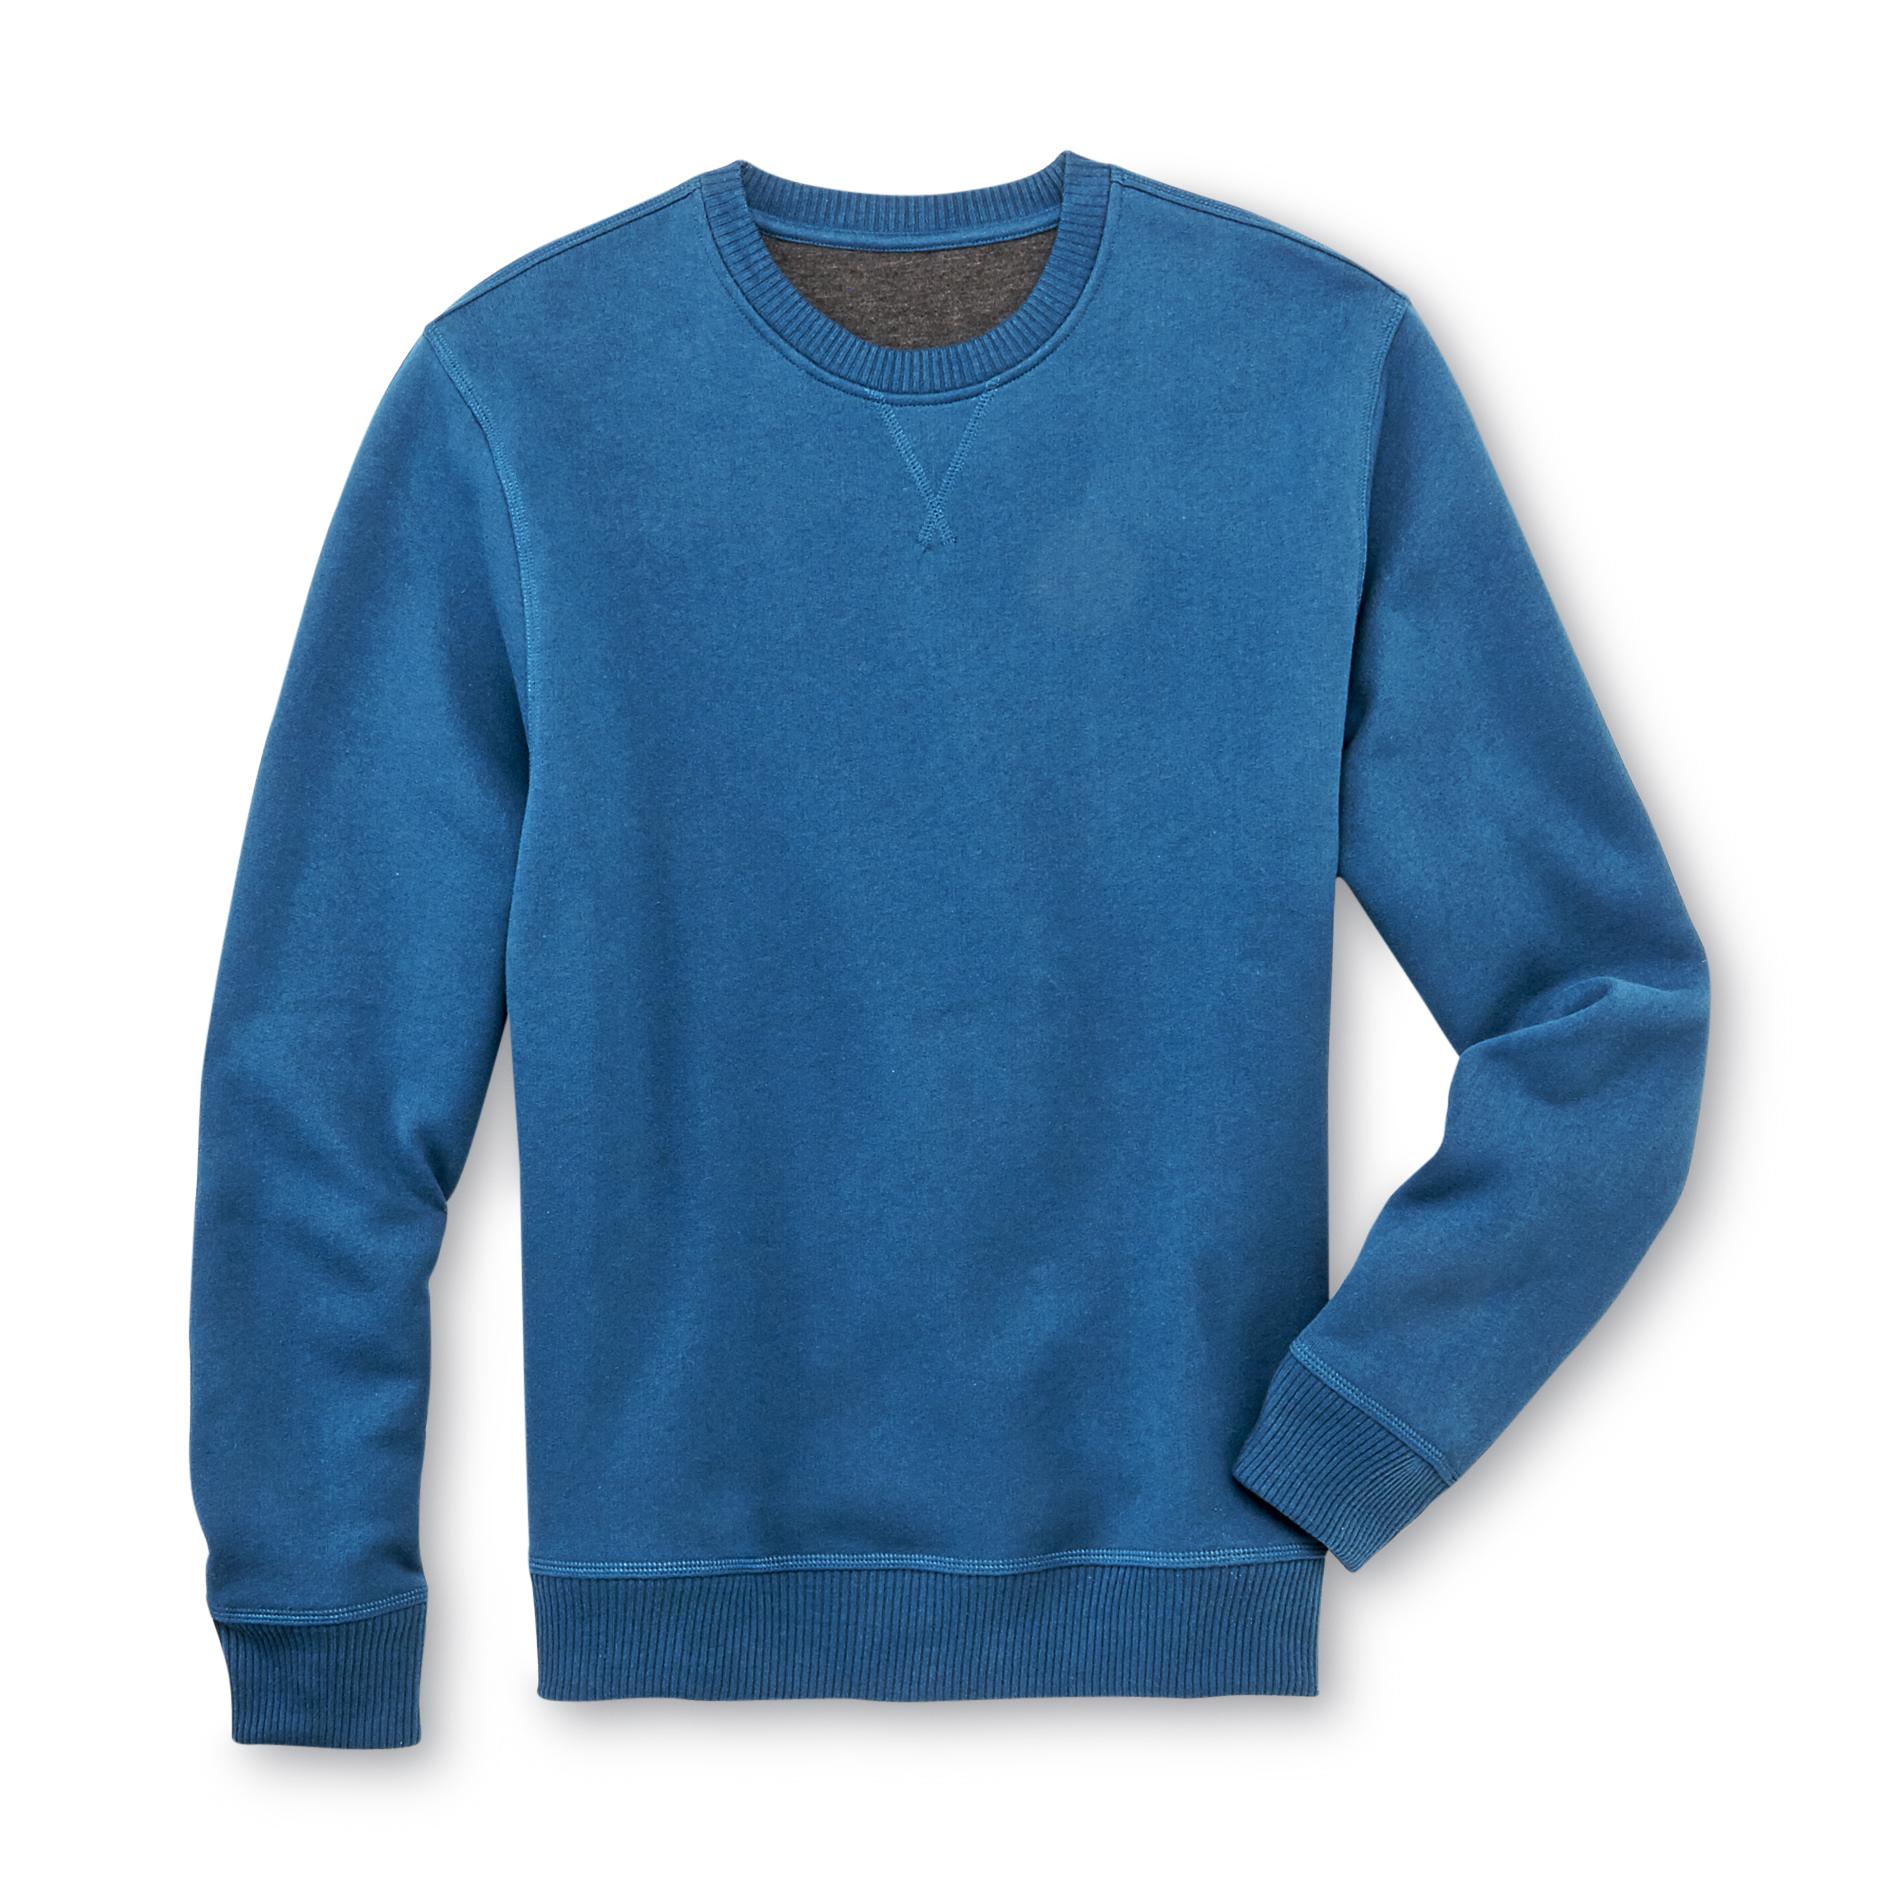 Outdoor Life Men's Fleece-Lined Sweatshirt